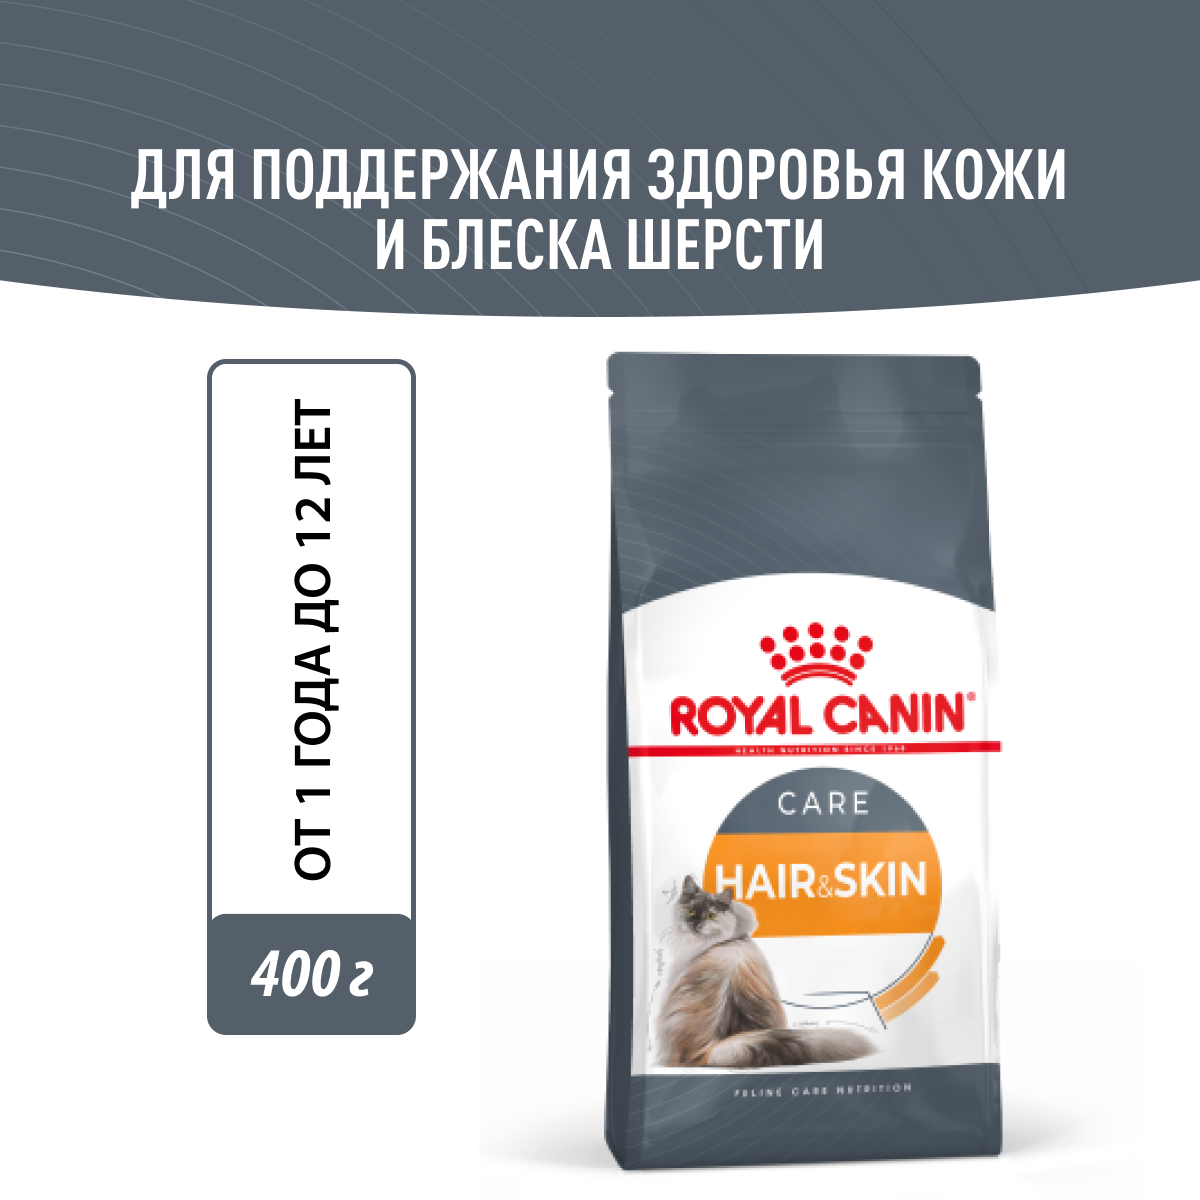 Royal Canin Hair & Skin Care сухой корм для взрослых кошек с проблемной шерстью и чувствительной кожей - 400 г